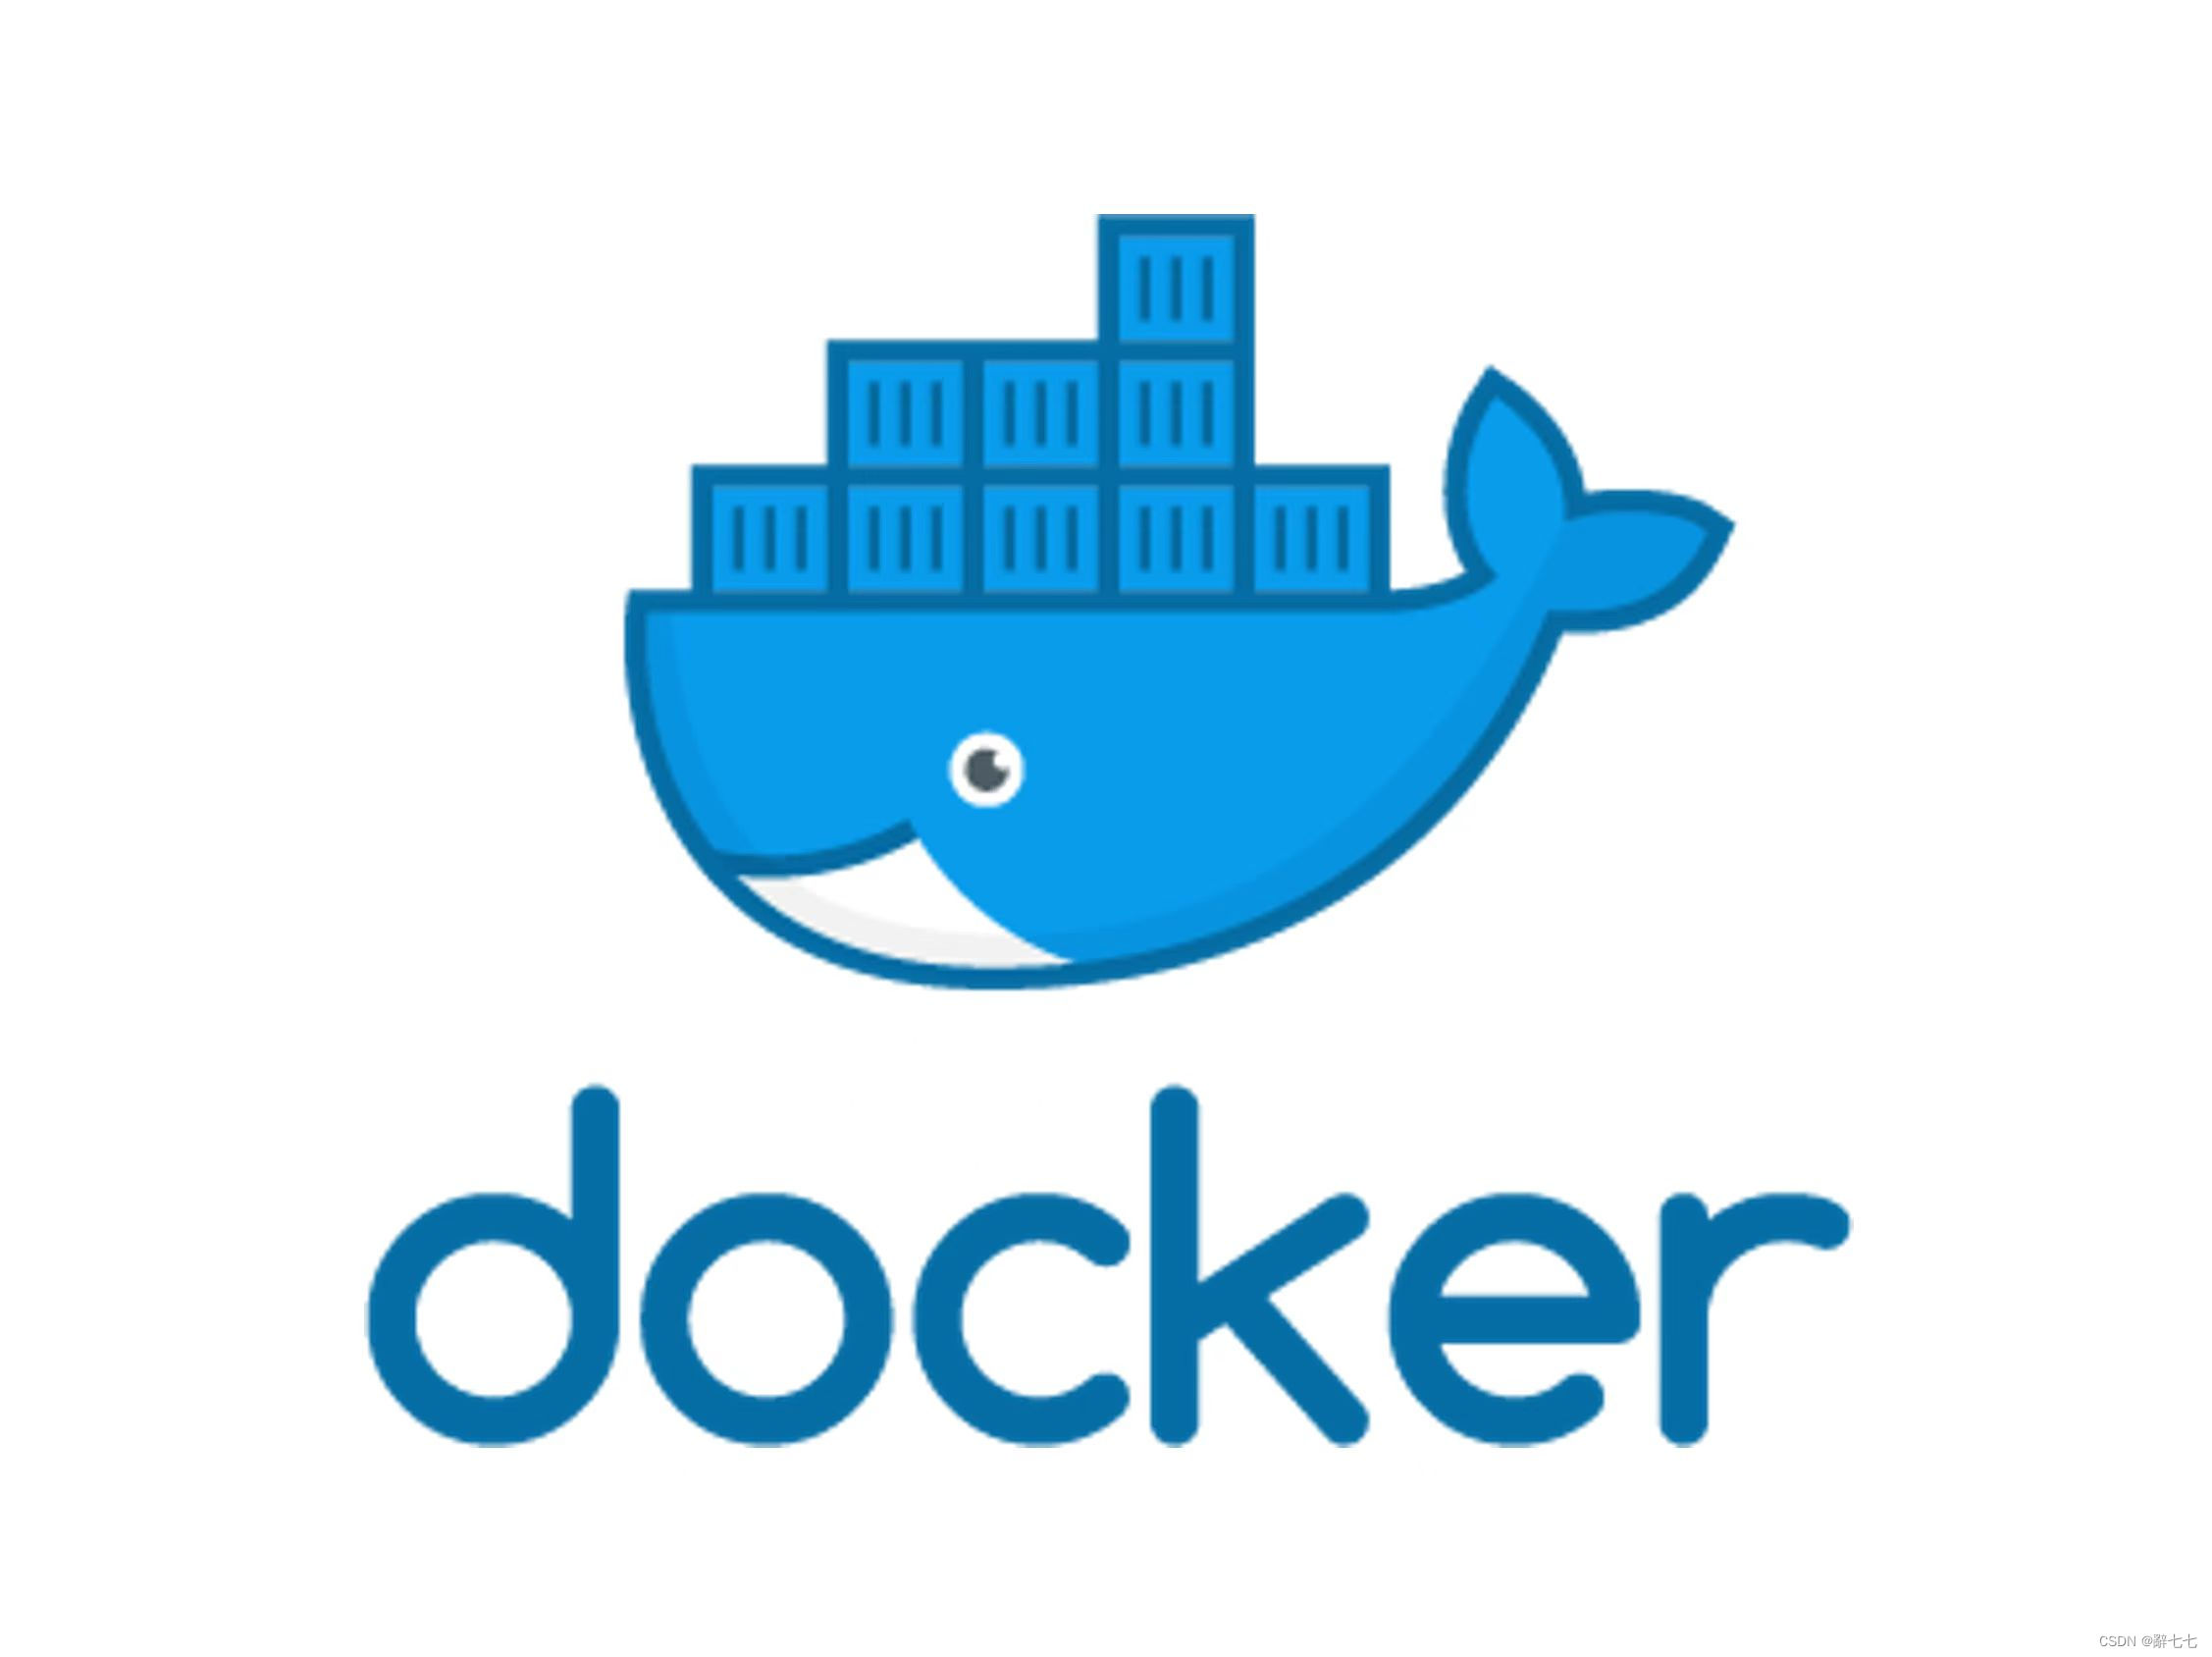 [Docker] Docker application scenarios, Docker advantages, Ubuntu Docker installation, using Shell script for installation